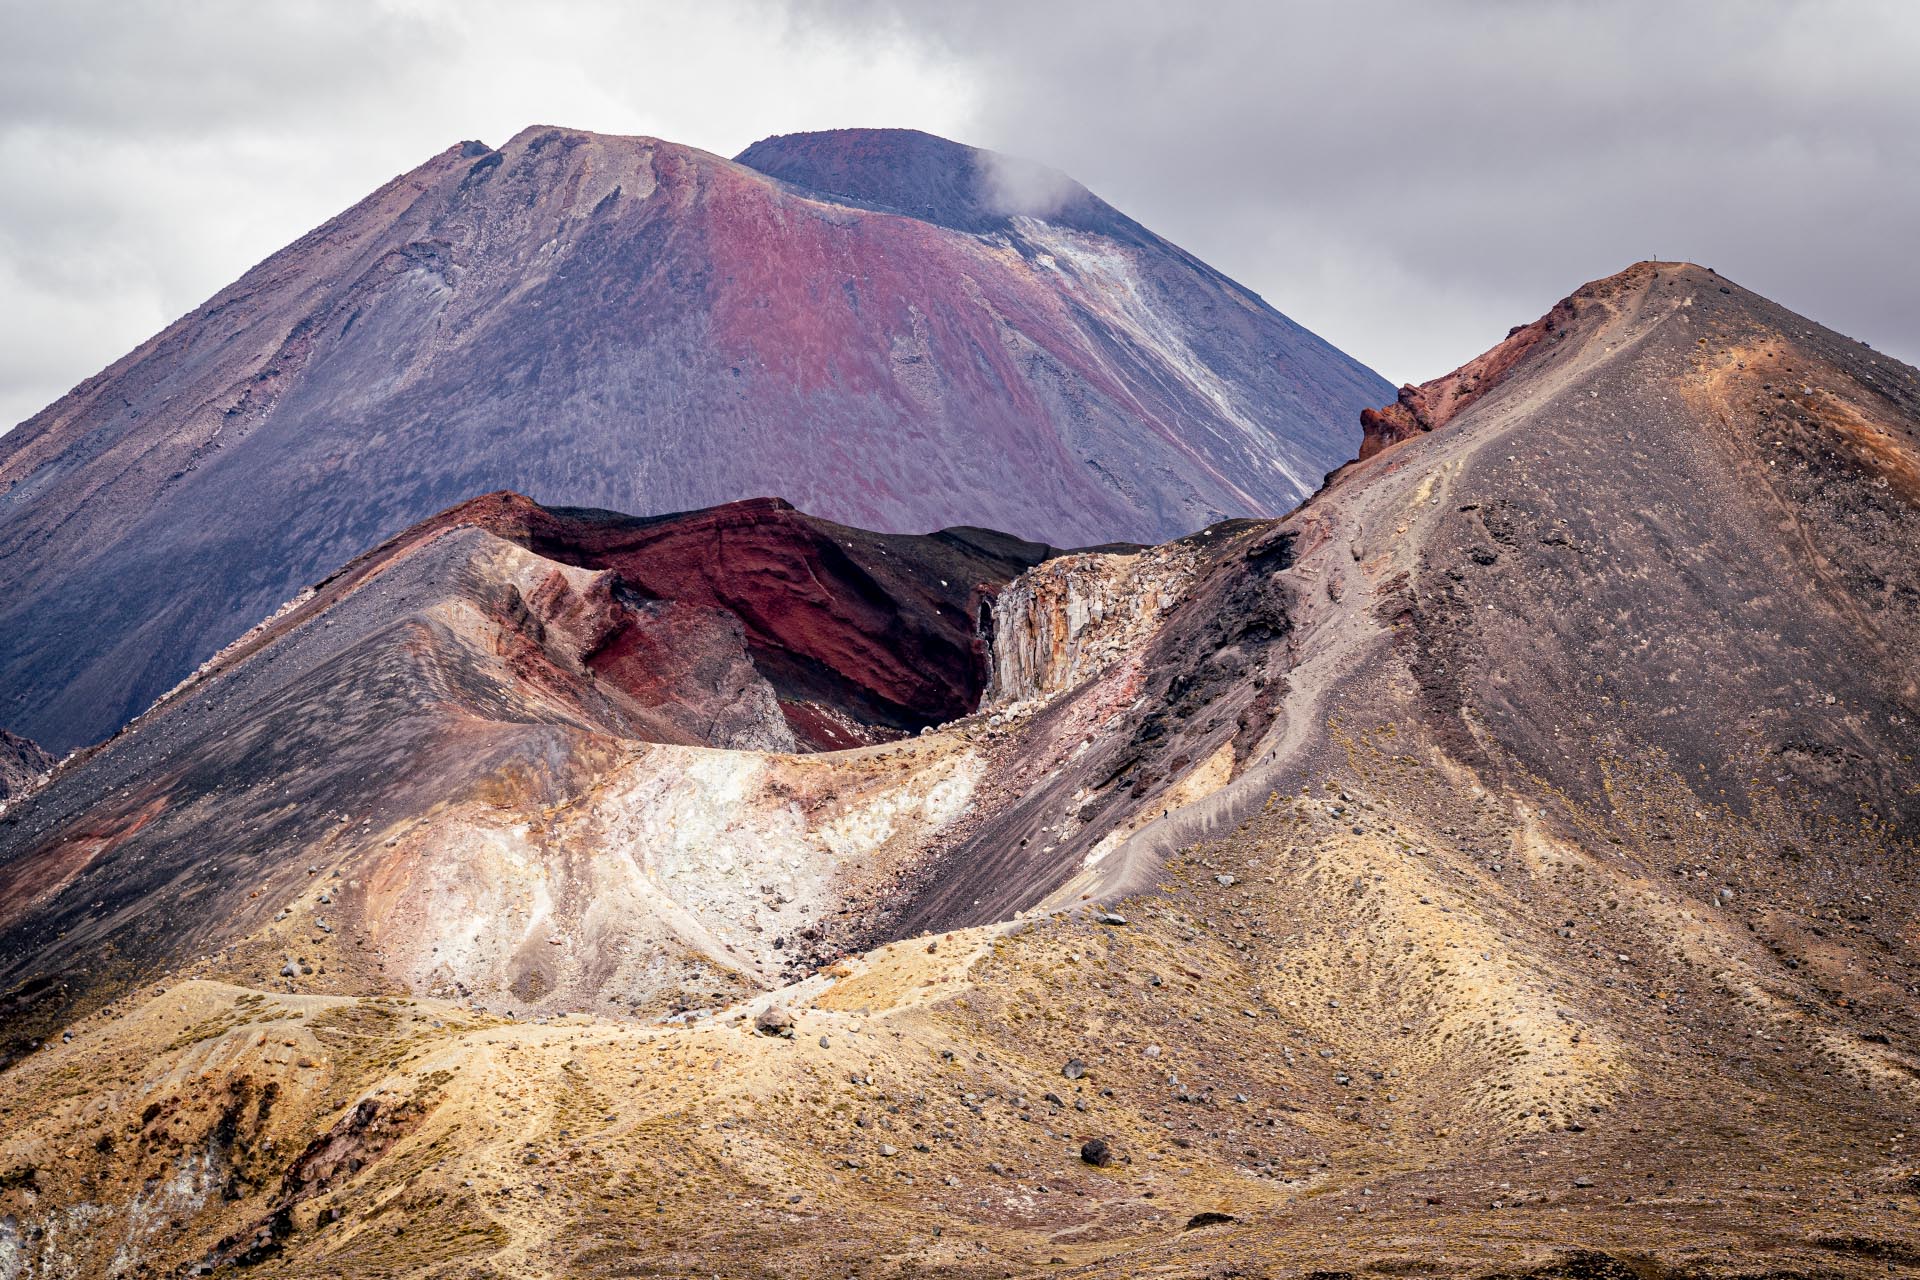 The Red Crater Mt Tongariro - Mt Ngāuruhoe behind